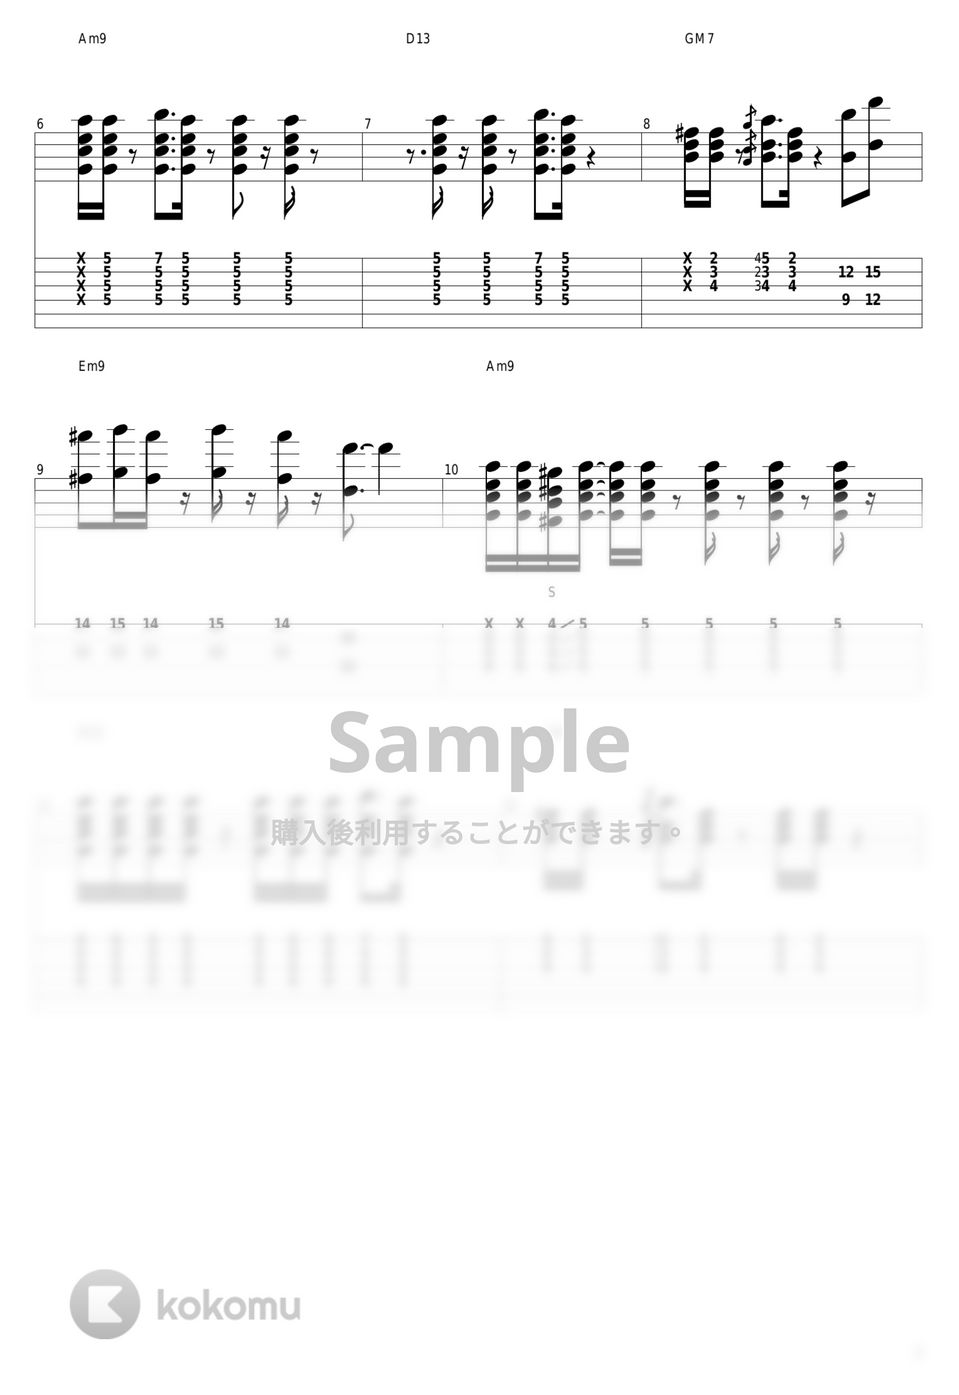 大橋純子 - Telephone Number by guitar cover with tab